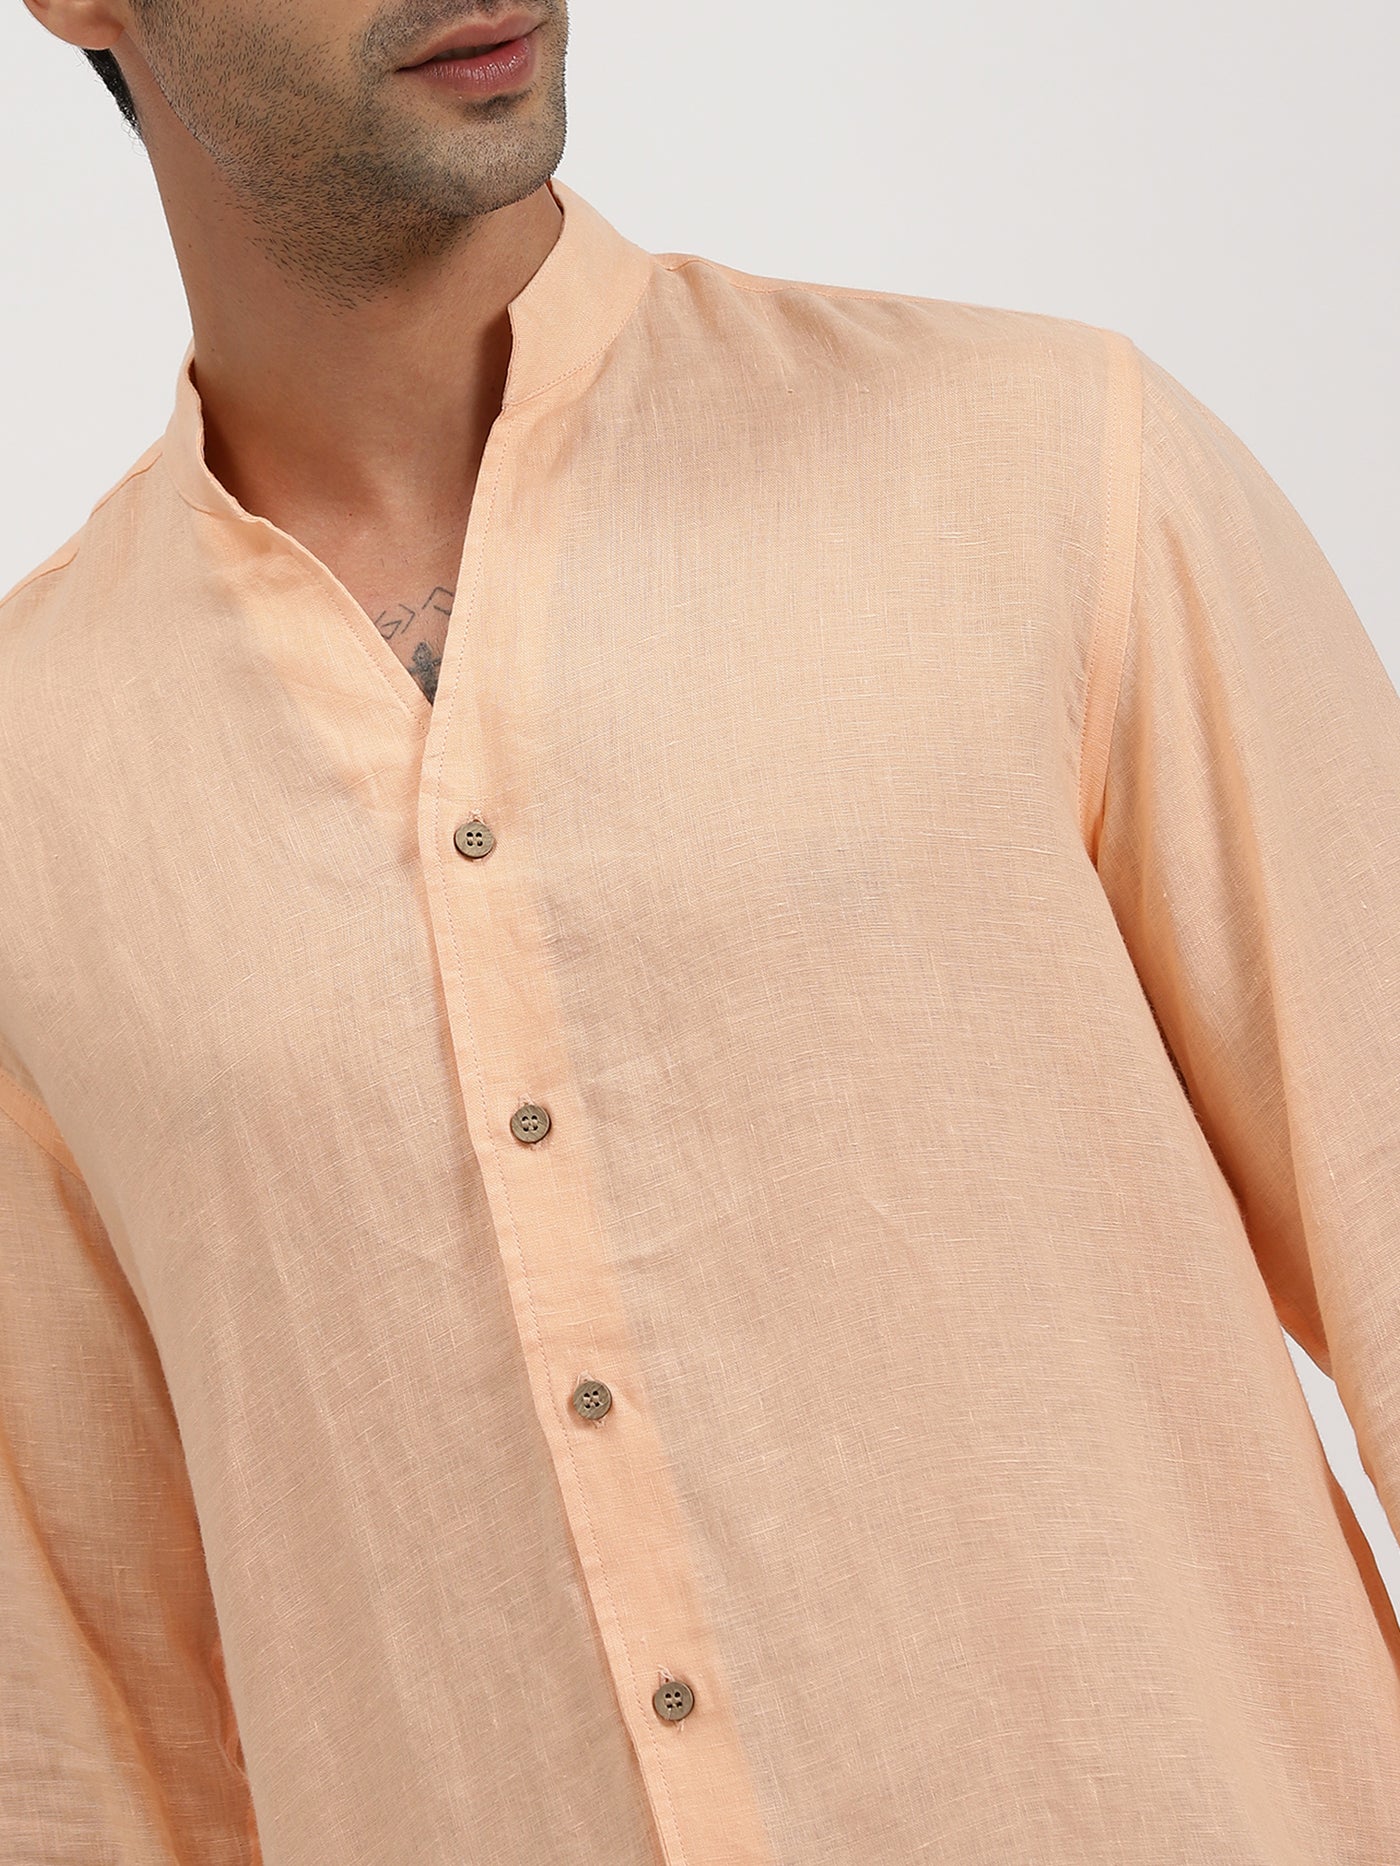 Craig - Pure Linen V Neck Full Sleeve Shirt - Sherbet Orange